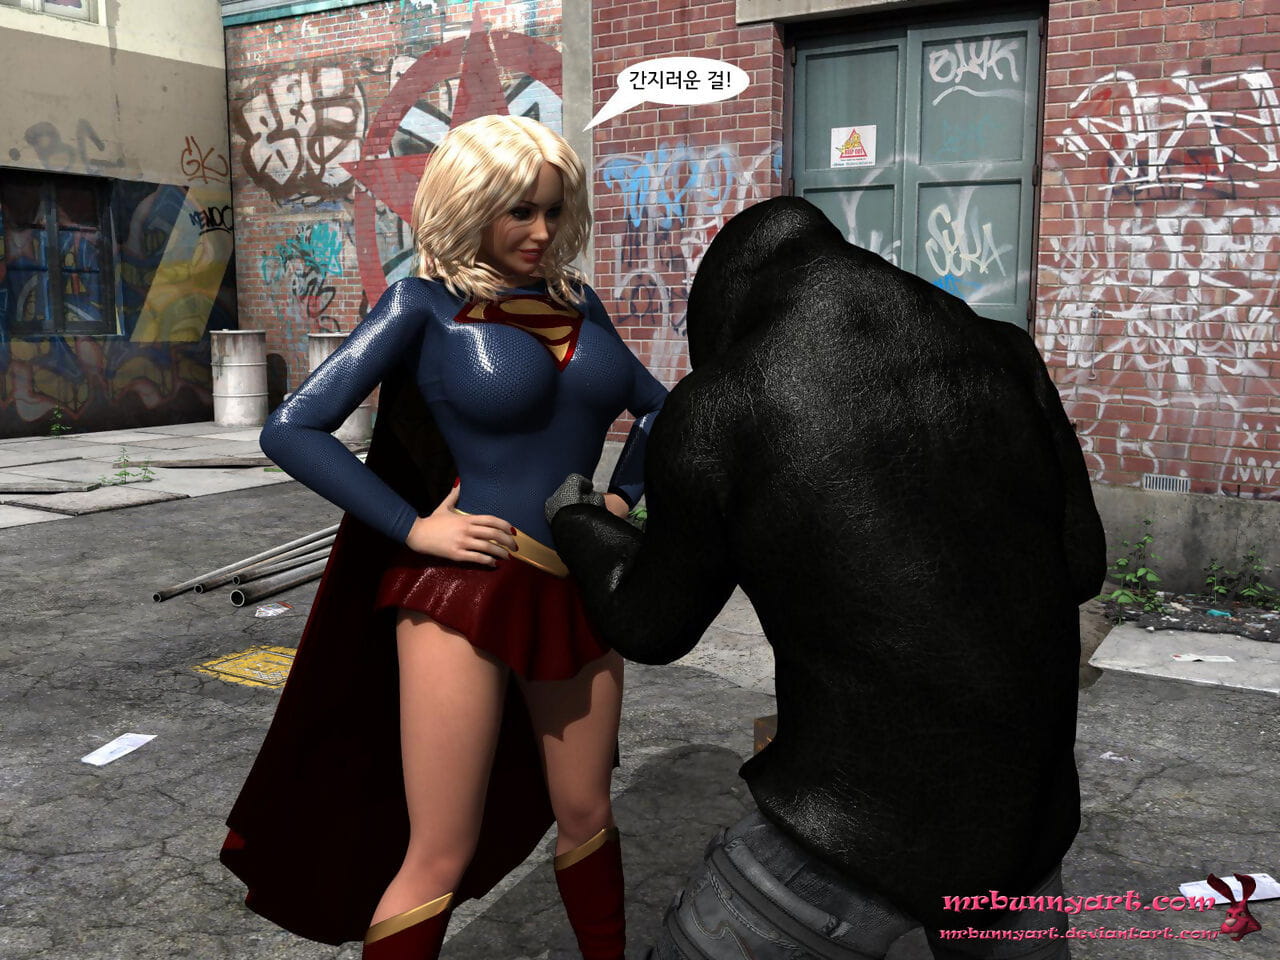 supergirl đấu với Cain page 1